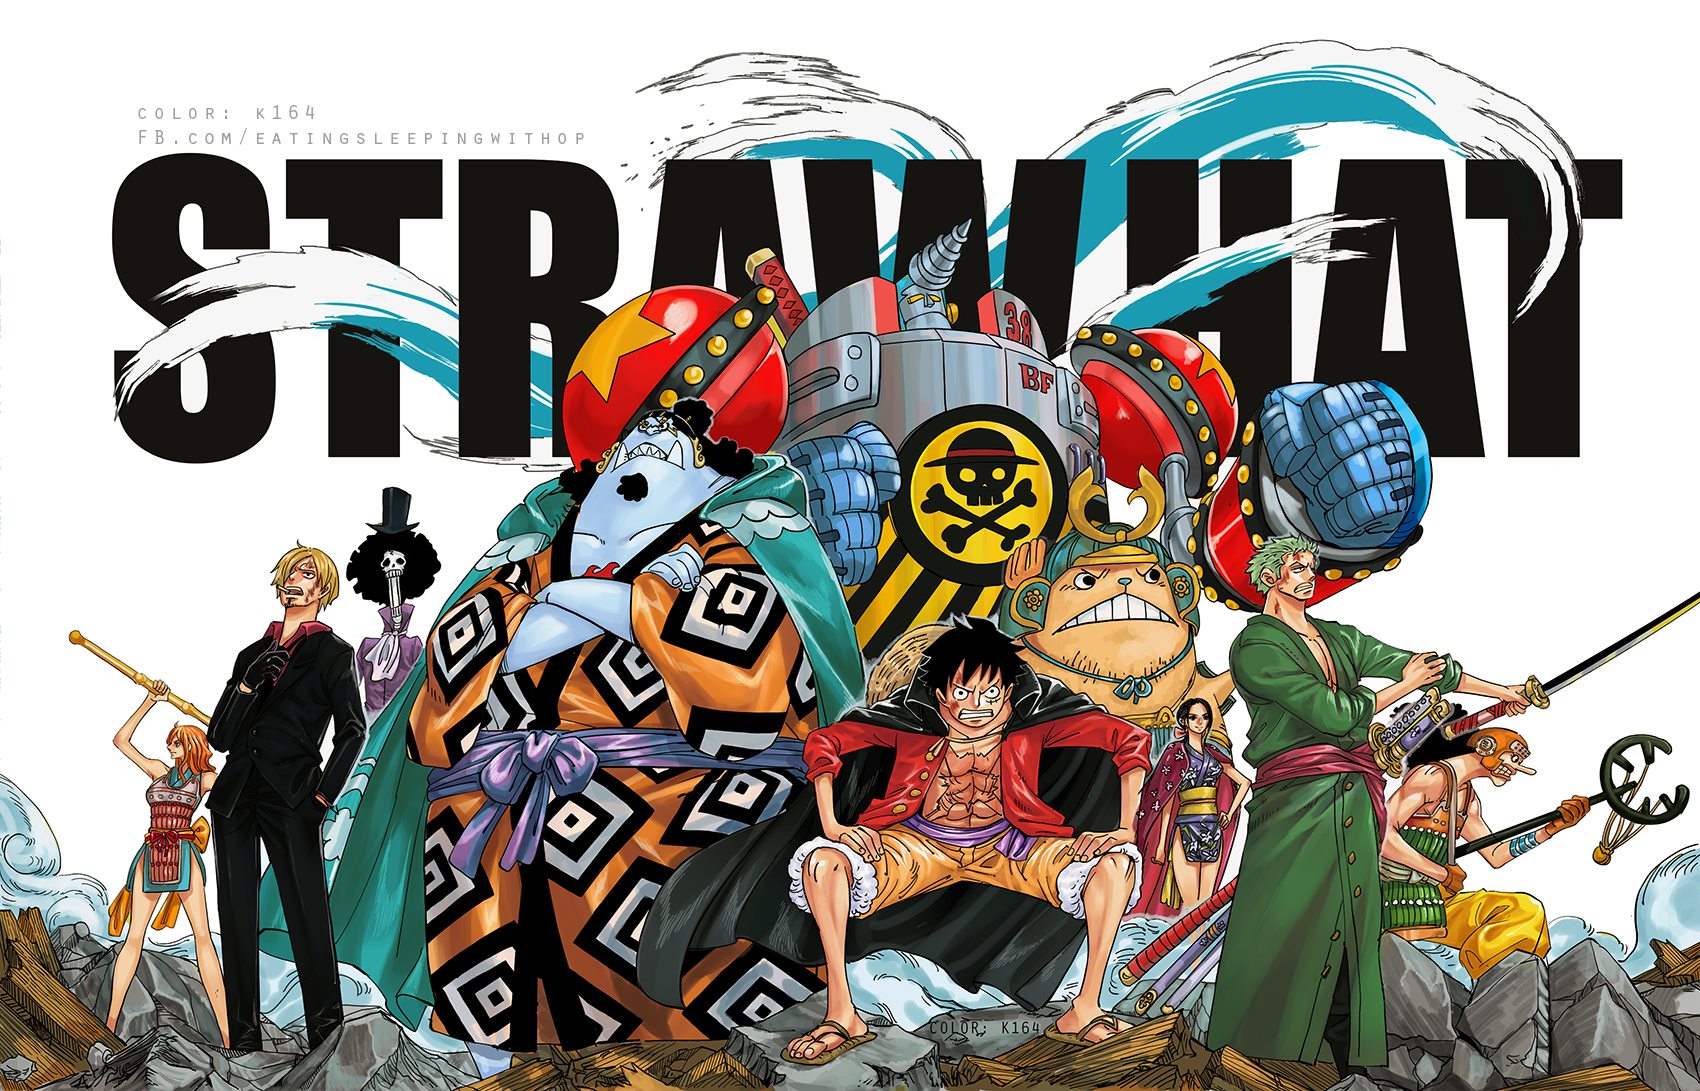 Chi tiết đáng chú ý trong hình ảnh này đang chờ đợi chỉ có bạn để khám phá. Với One Piece, bạn sẽ không bao giờ biết được bạn sẽ tìm được gì trong những chi tiết của từng tấm ảnh. Hãy tìm kiếm những chi tiết đặc biệt, mang đến những trải nghiệm tuyệt vời và độc đáo mà không phải ai cũng có được.